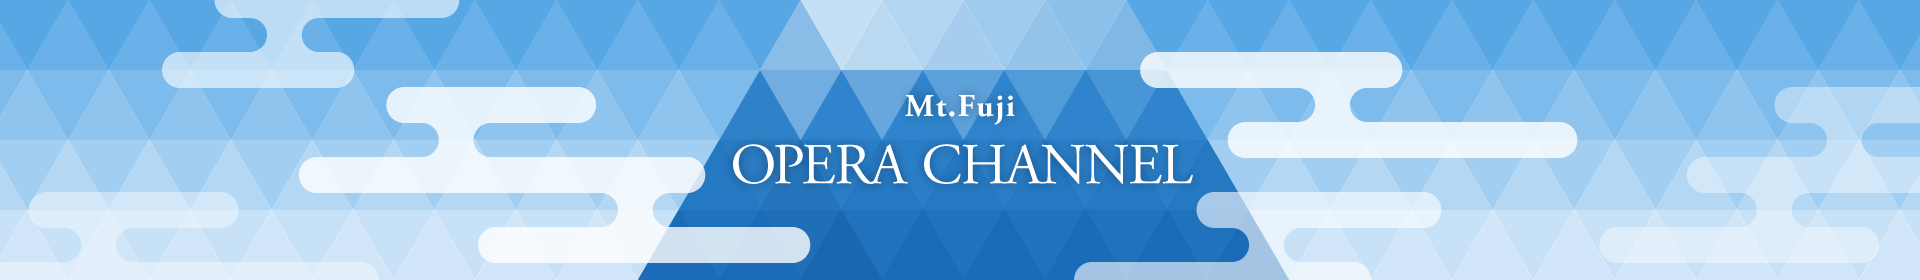 Mt. FUJI OPERA channel